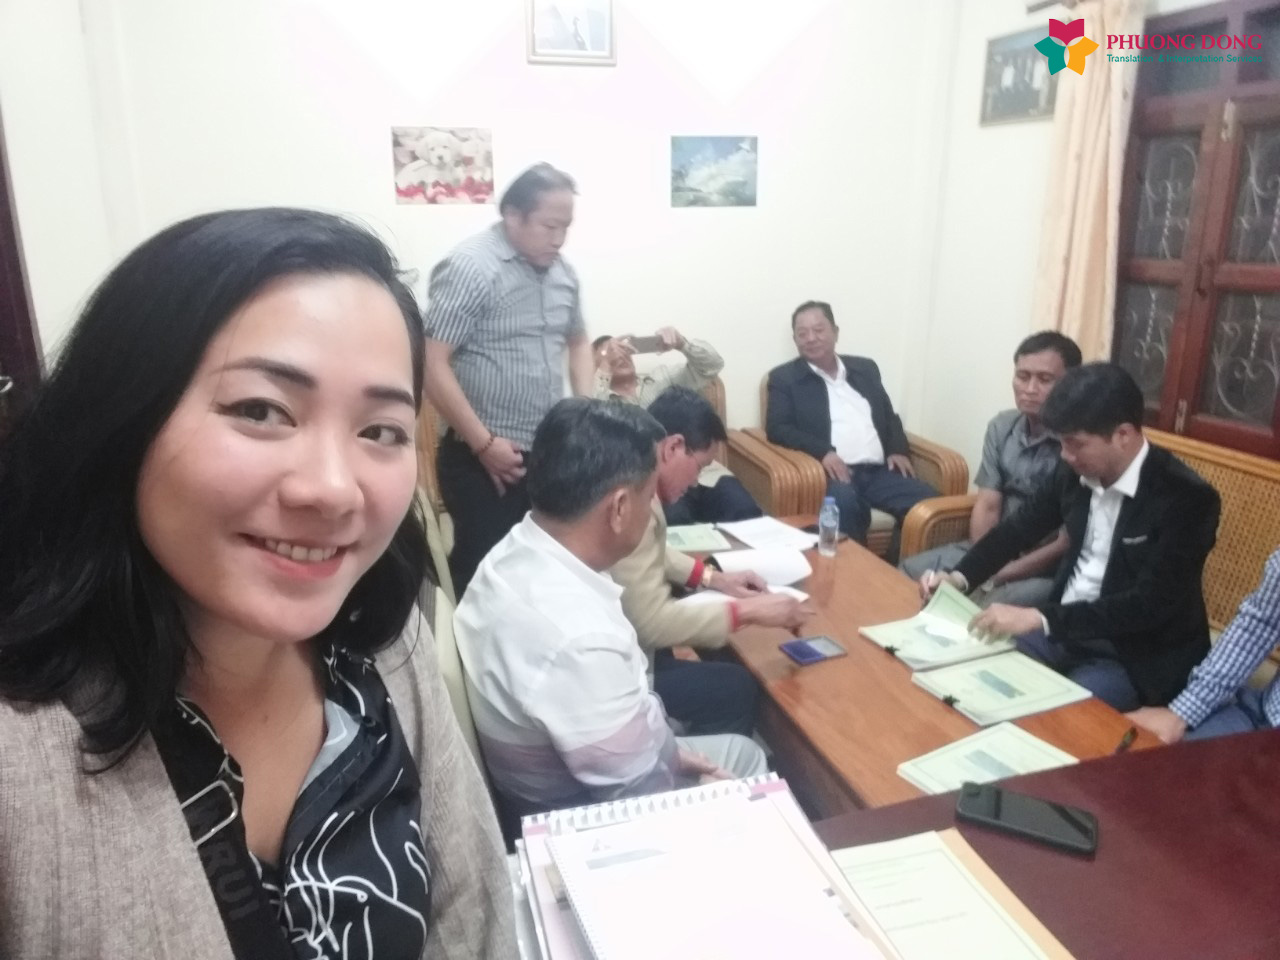 Phiên dịch tiếng Anh cho buổi ký kết hợp đồng lĩnh vực xây dựng tại Lào